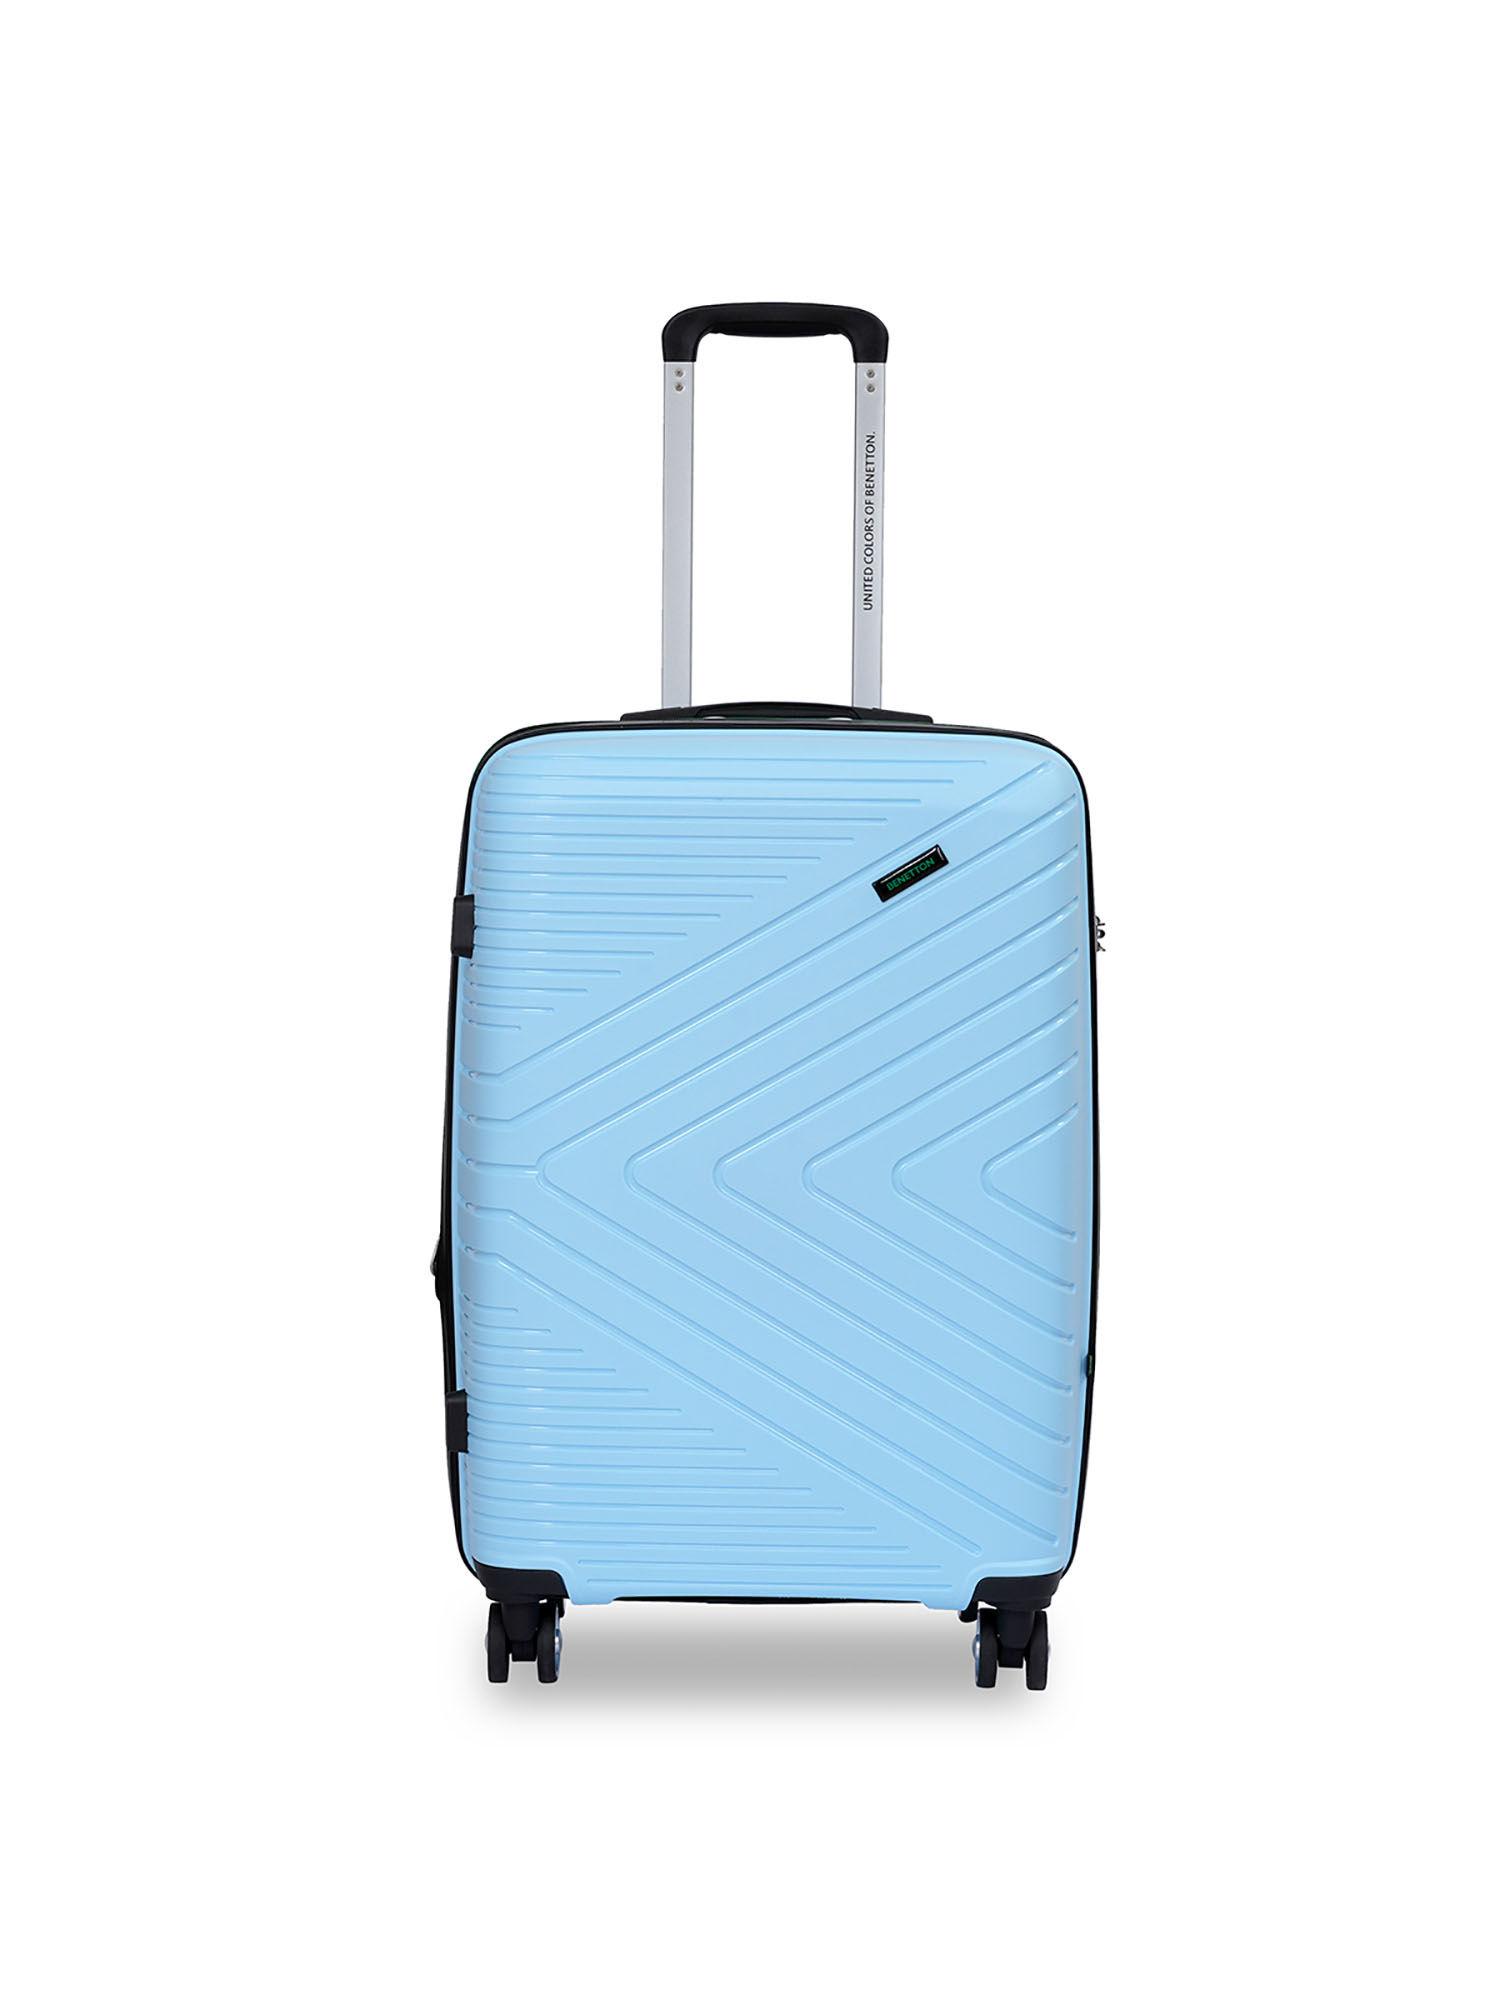 jasper unisex hard luggage - sky blue, 56cm cabin trolley bag